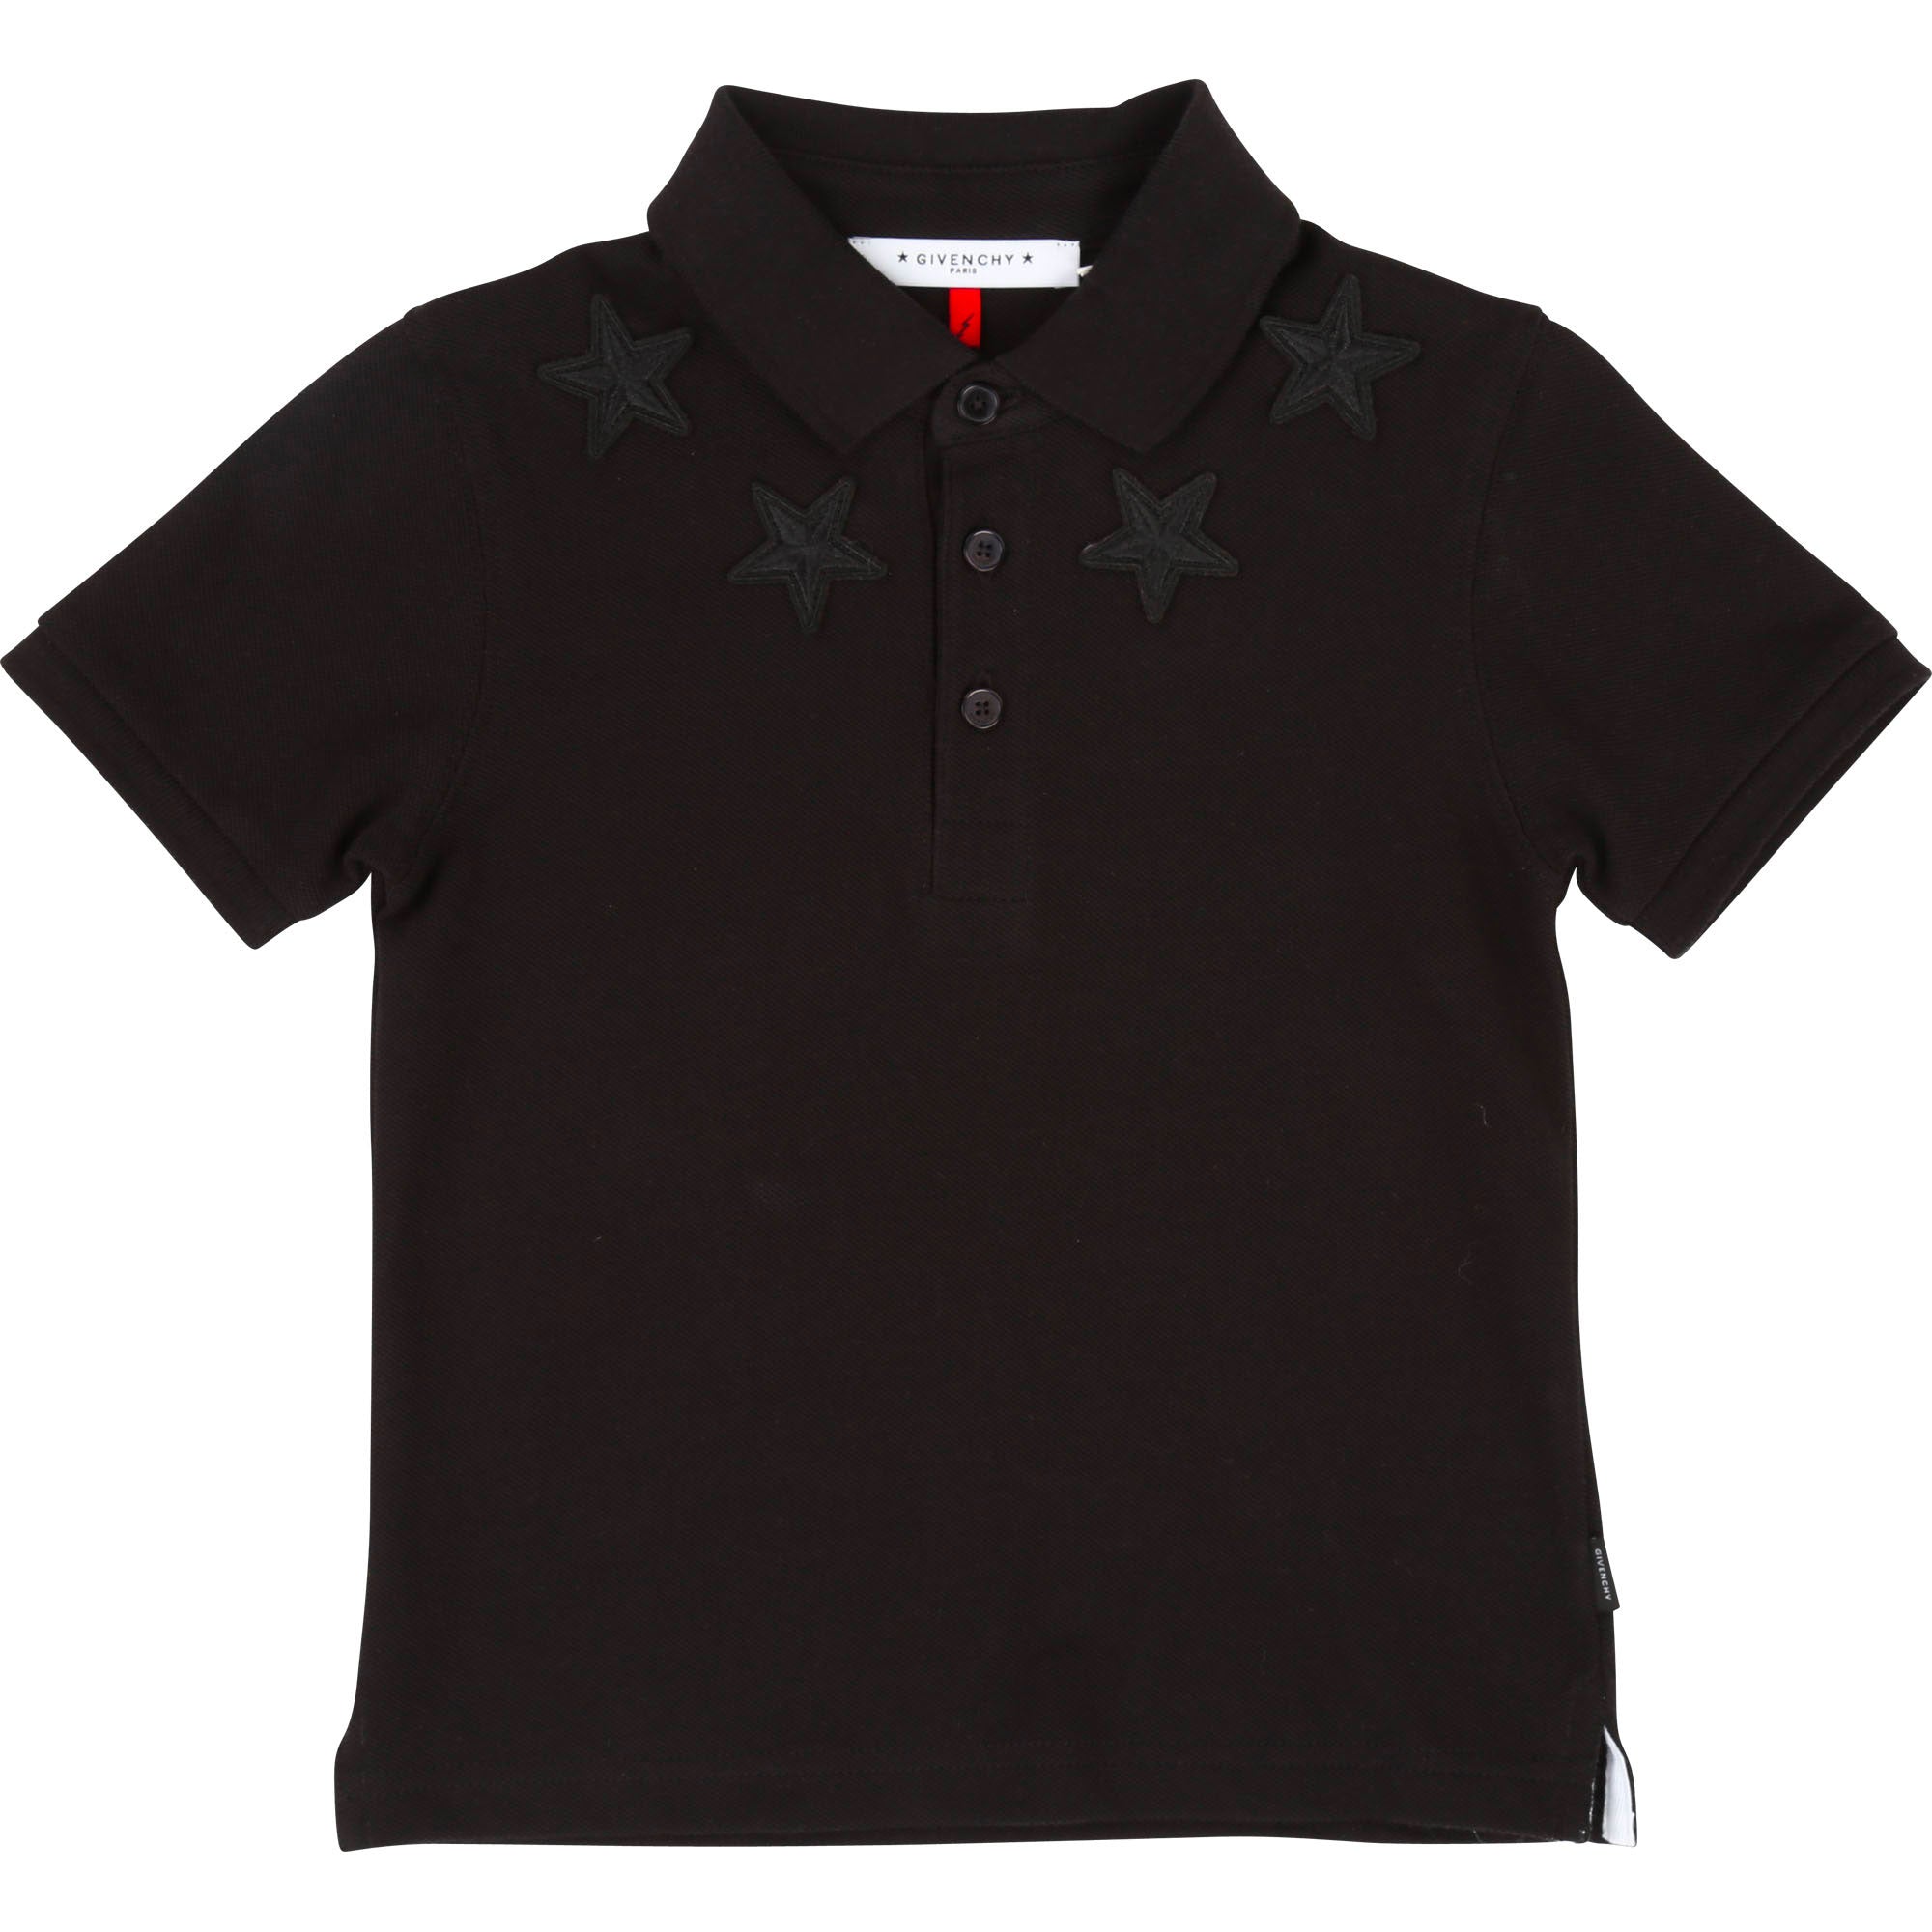 Boys Black Polo Embroidered Shirt